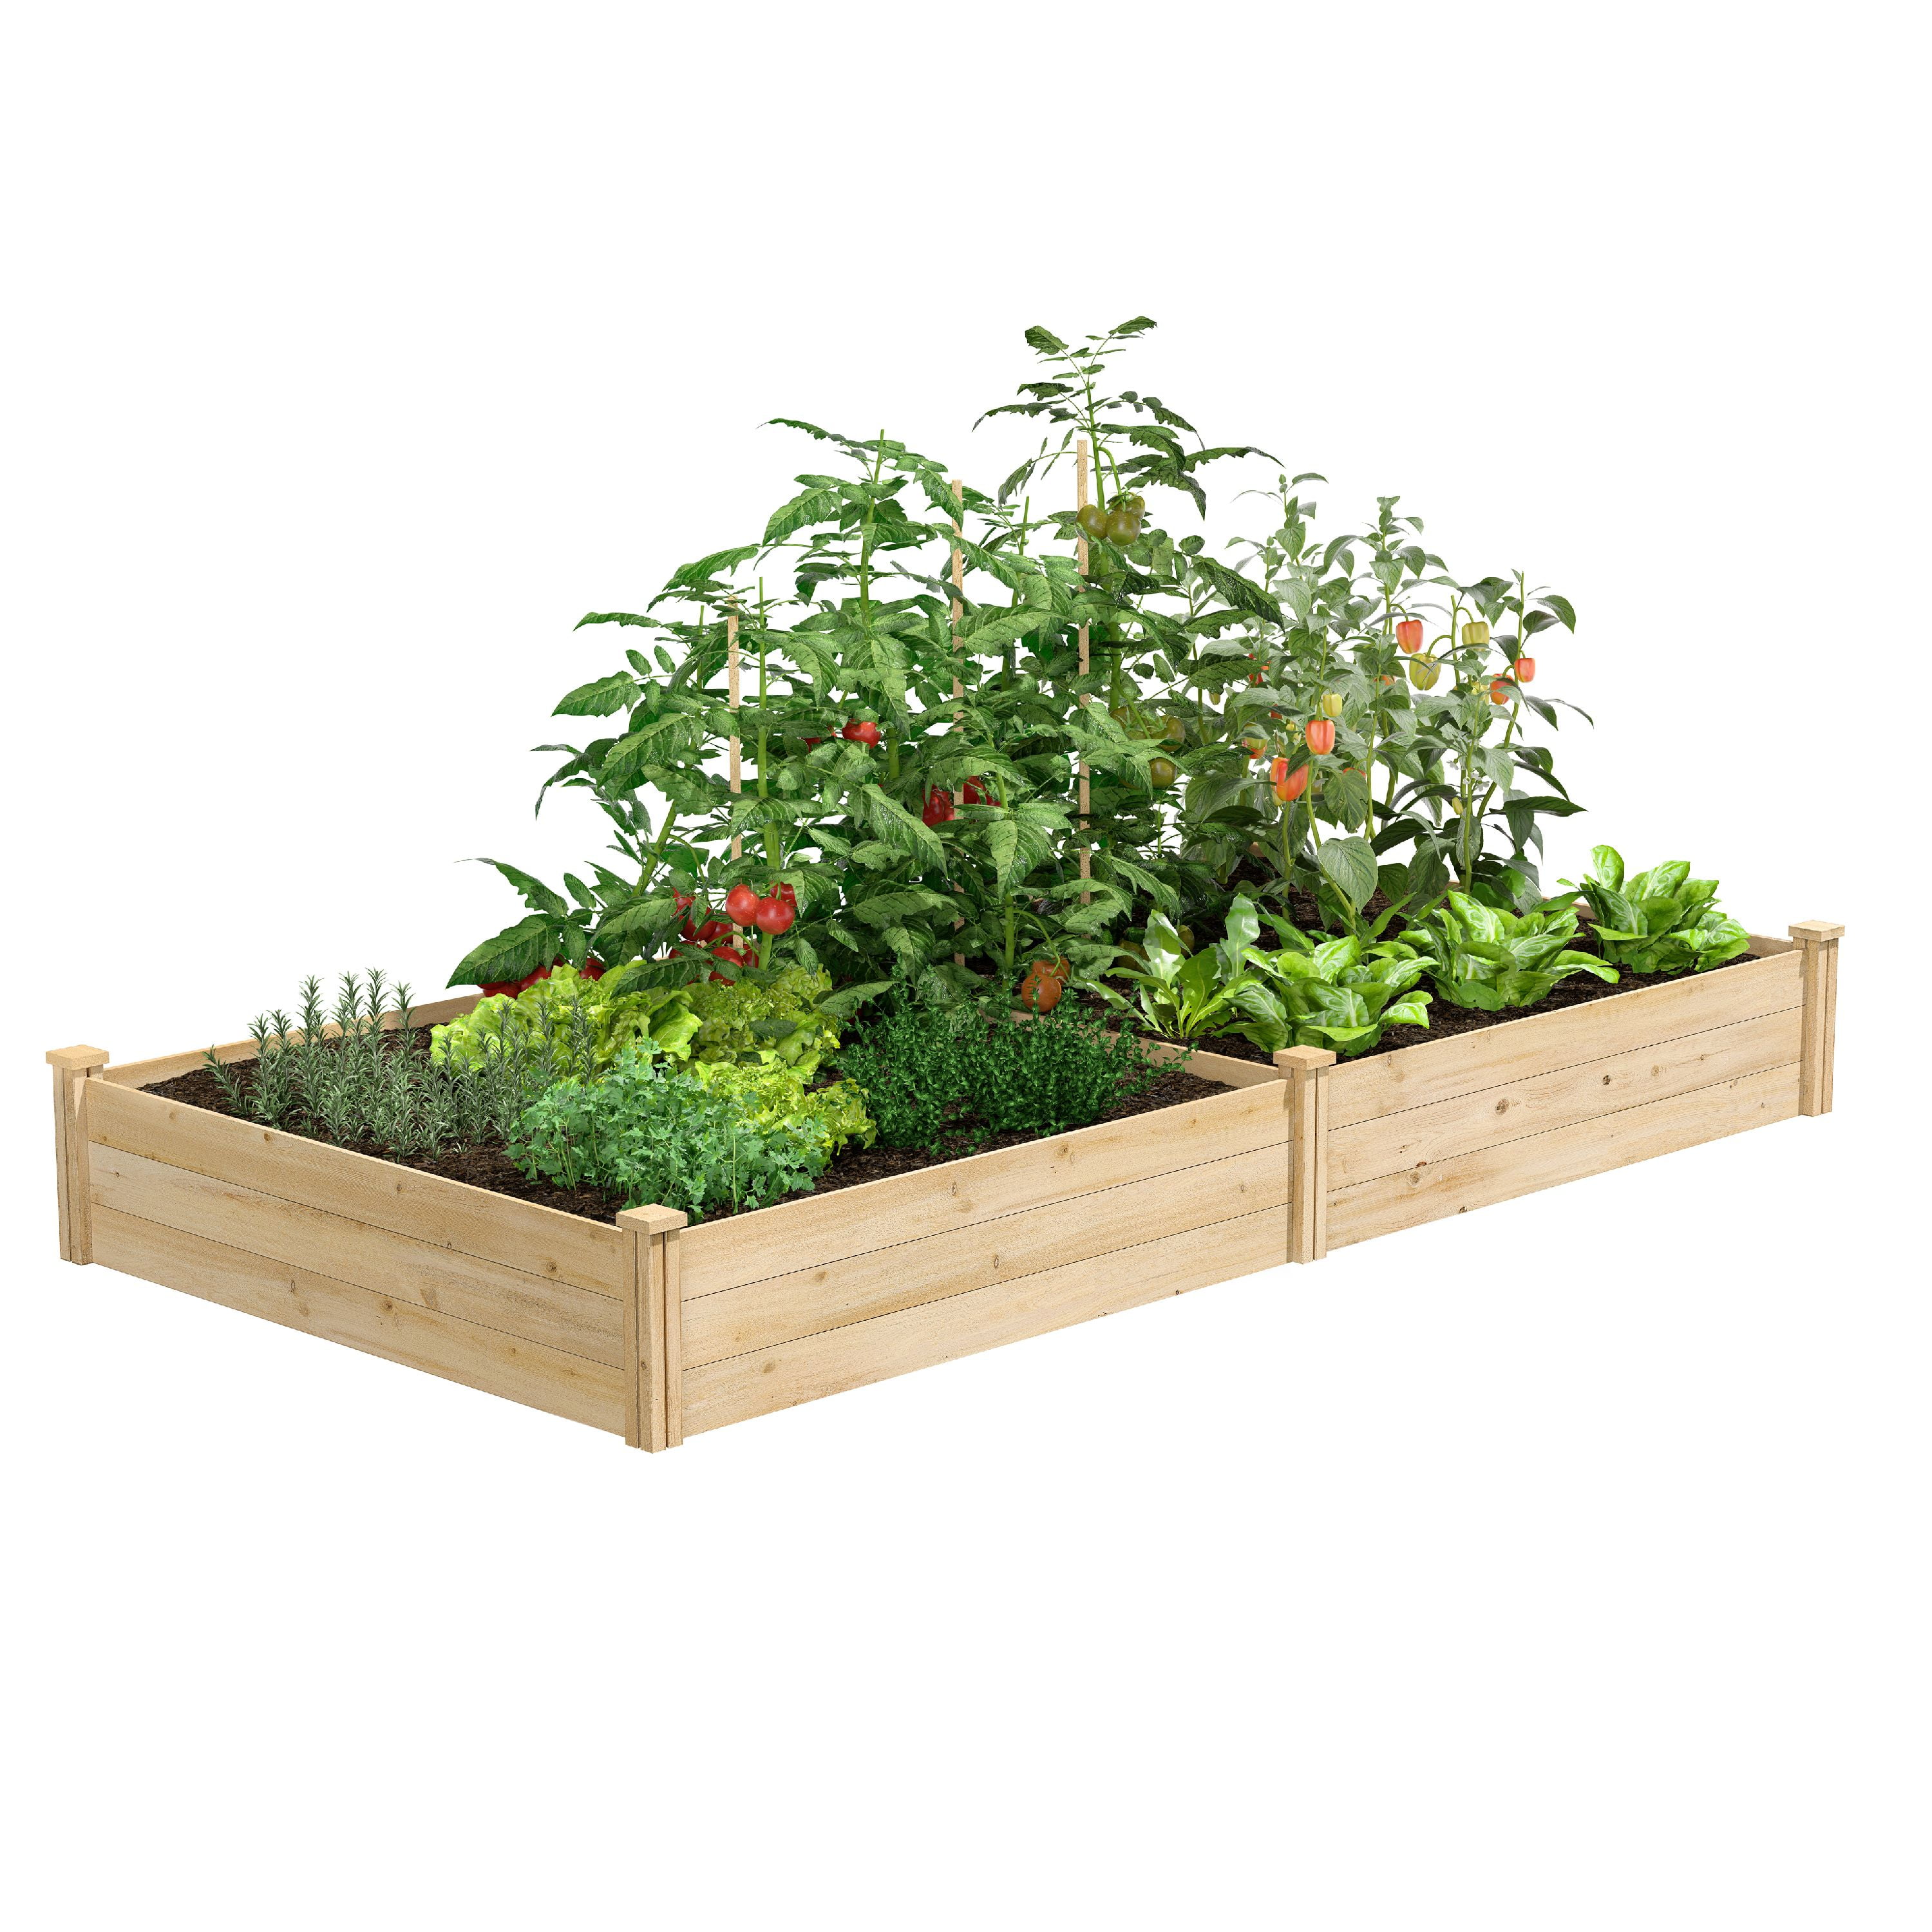 4' x 8' x 10.5 Cedar Raised Garden Bed Flower Vegetable Wooden Planter Gardening 